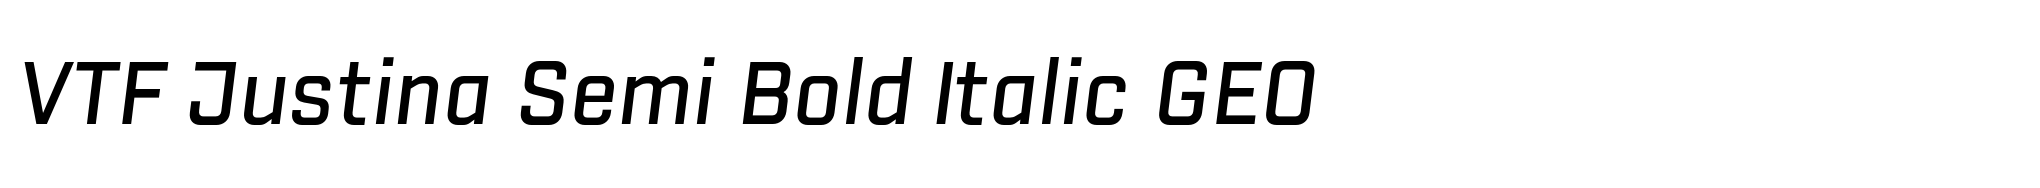 VTF Justina Semi Bold Italic GEO image